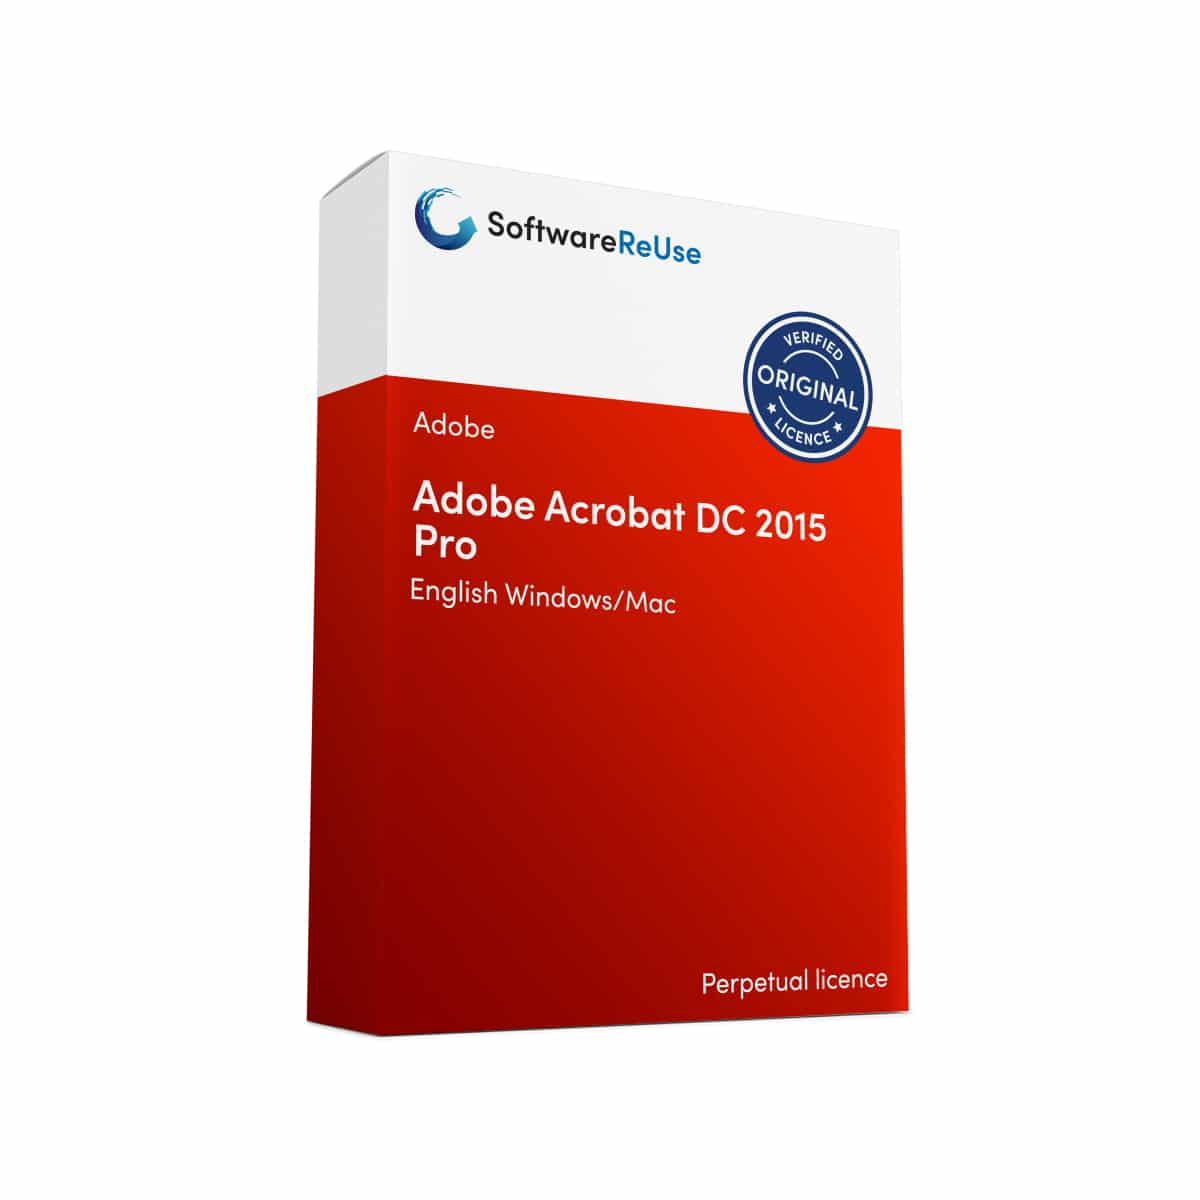 Adobe Acrobat DC 2015 Pro 1